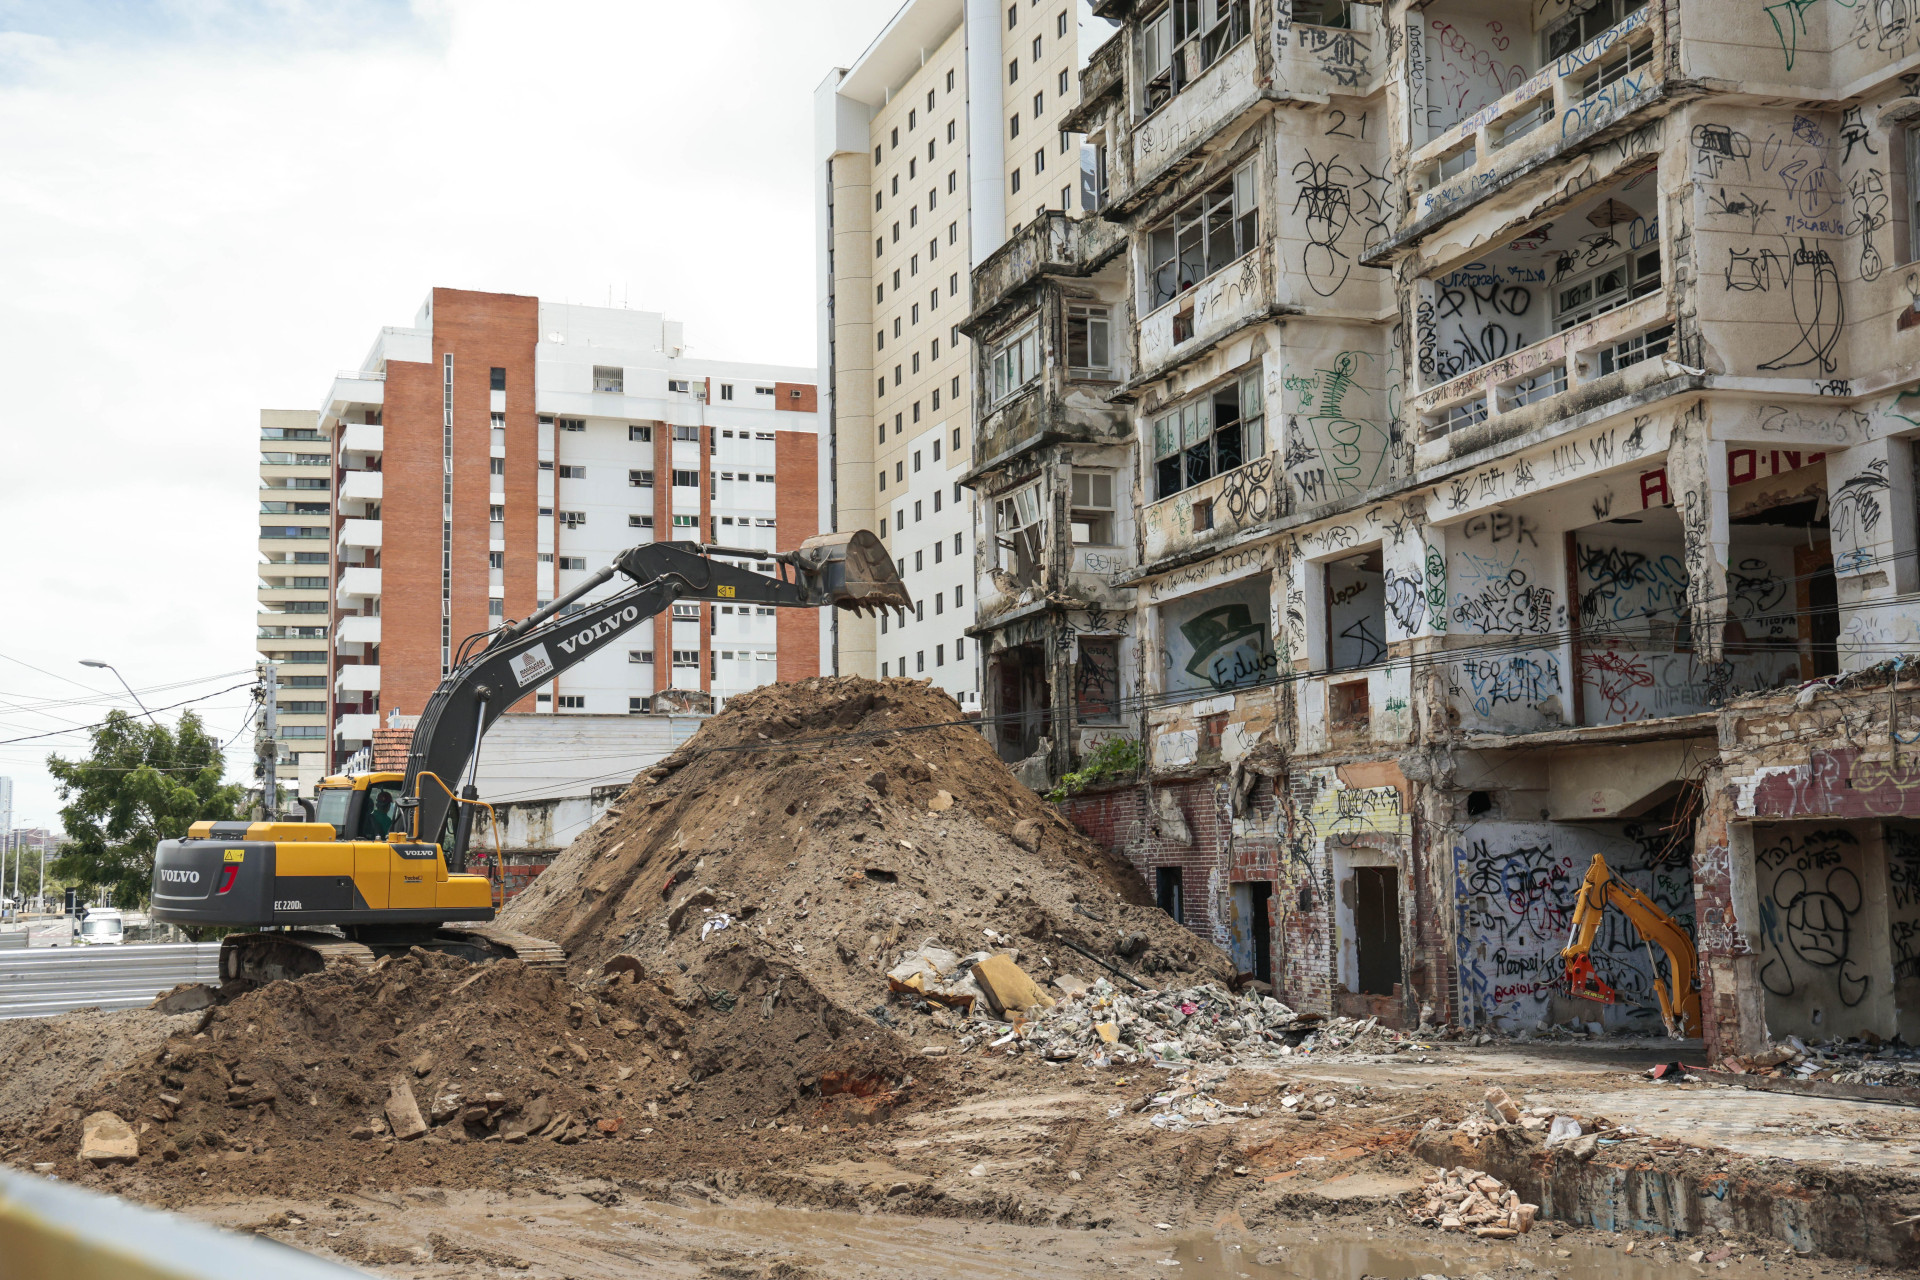 ￼APÒS 12 dias de embargo, a obra de demolição do São Pedro recomeçará (Foto: FCO FONTENELE)